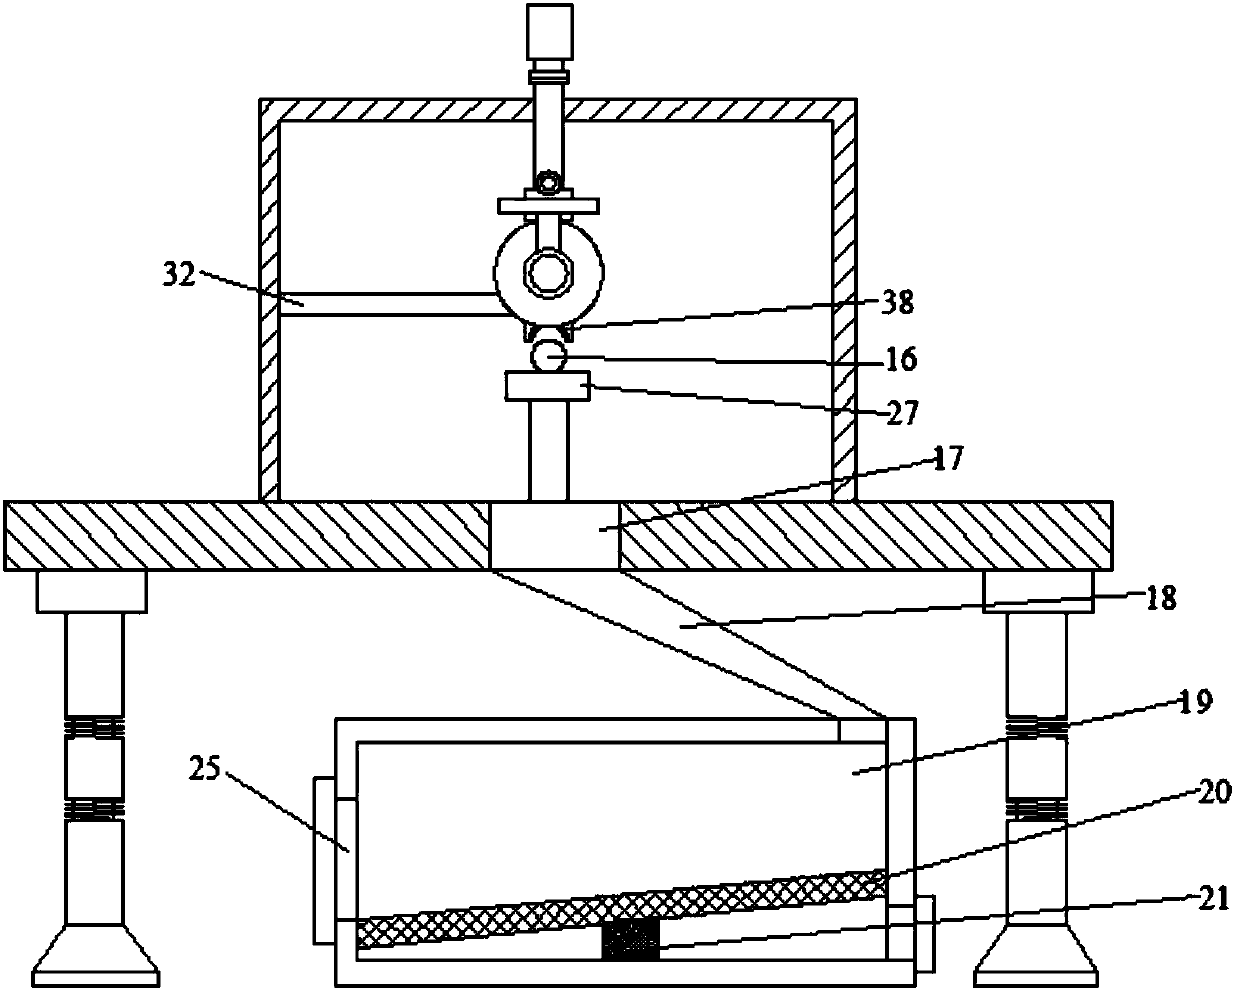 An automatic feeding steel bar cutting machine